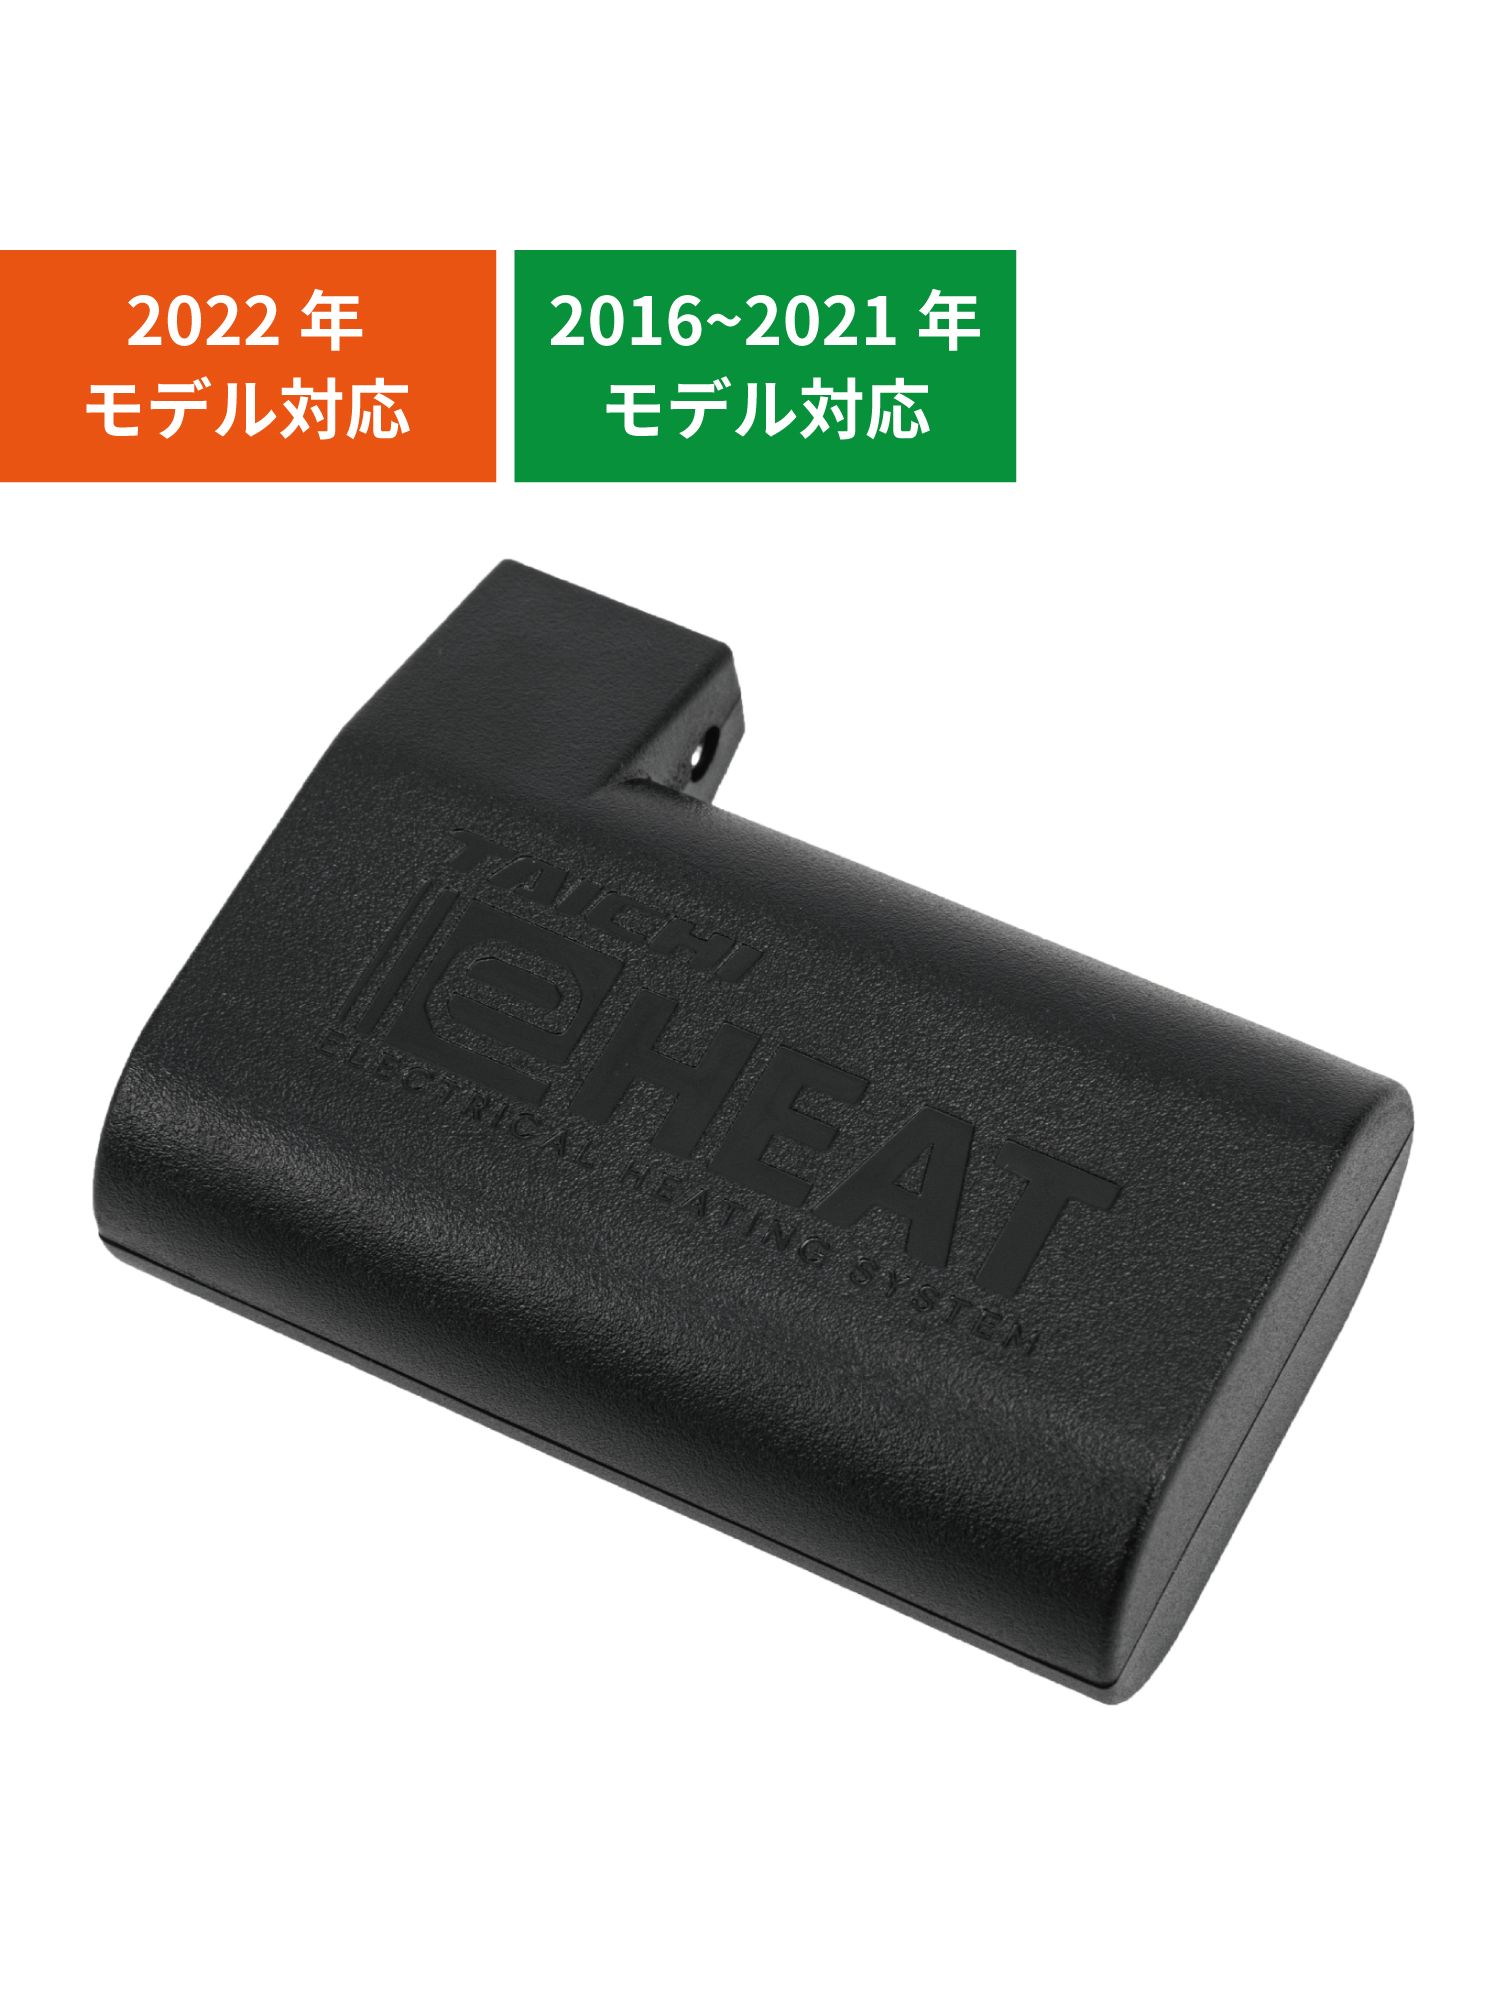 タイチ公式通販】RSP065 | e-HEAT 7.2V専用バッテリー:1個 | TAICHI